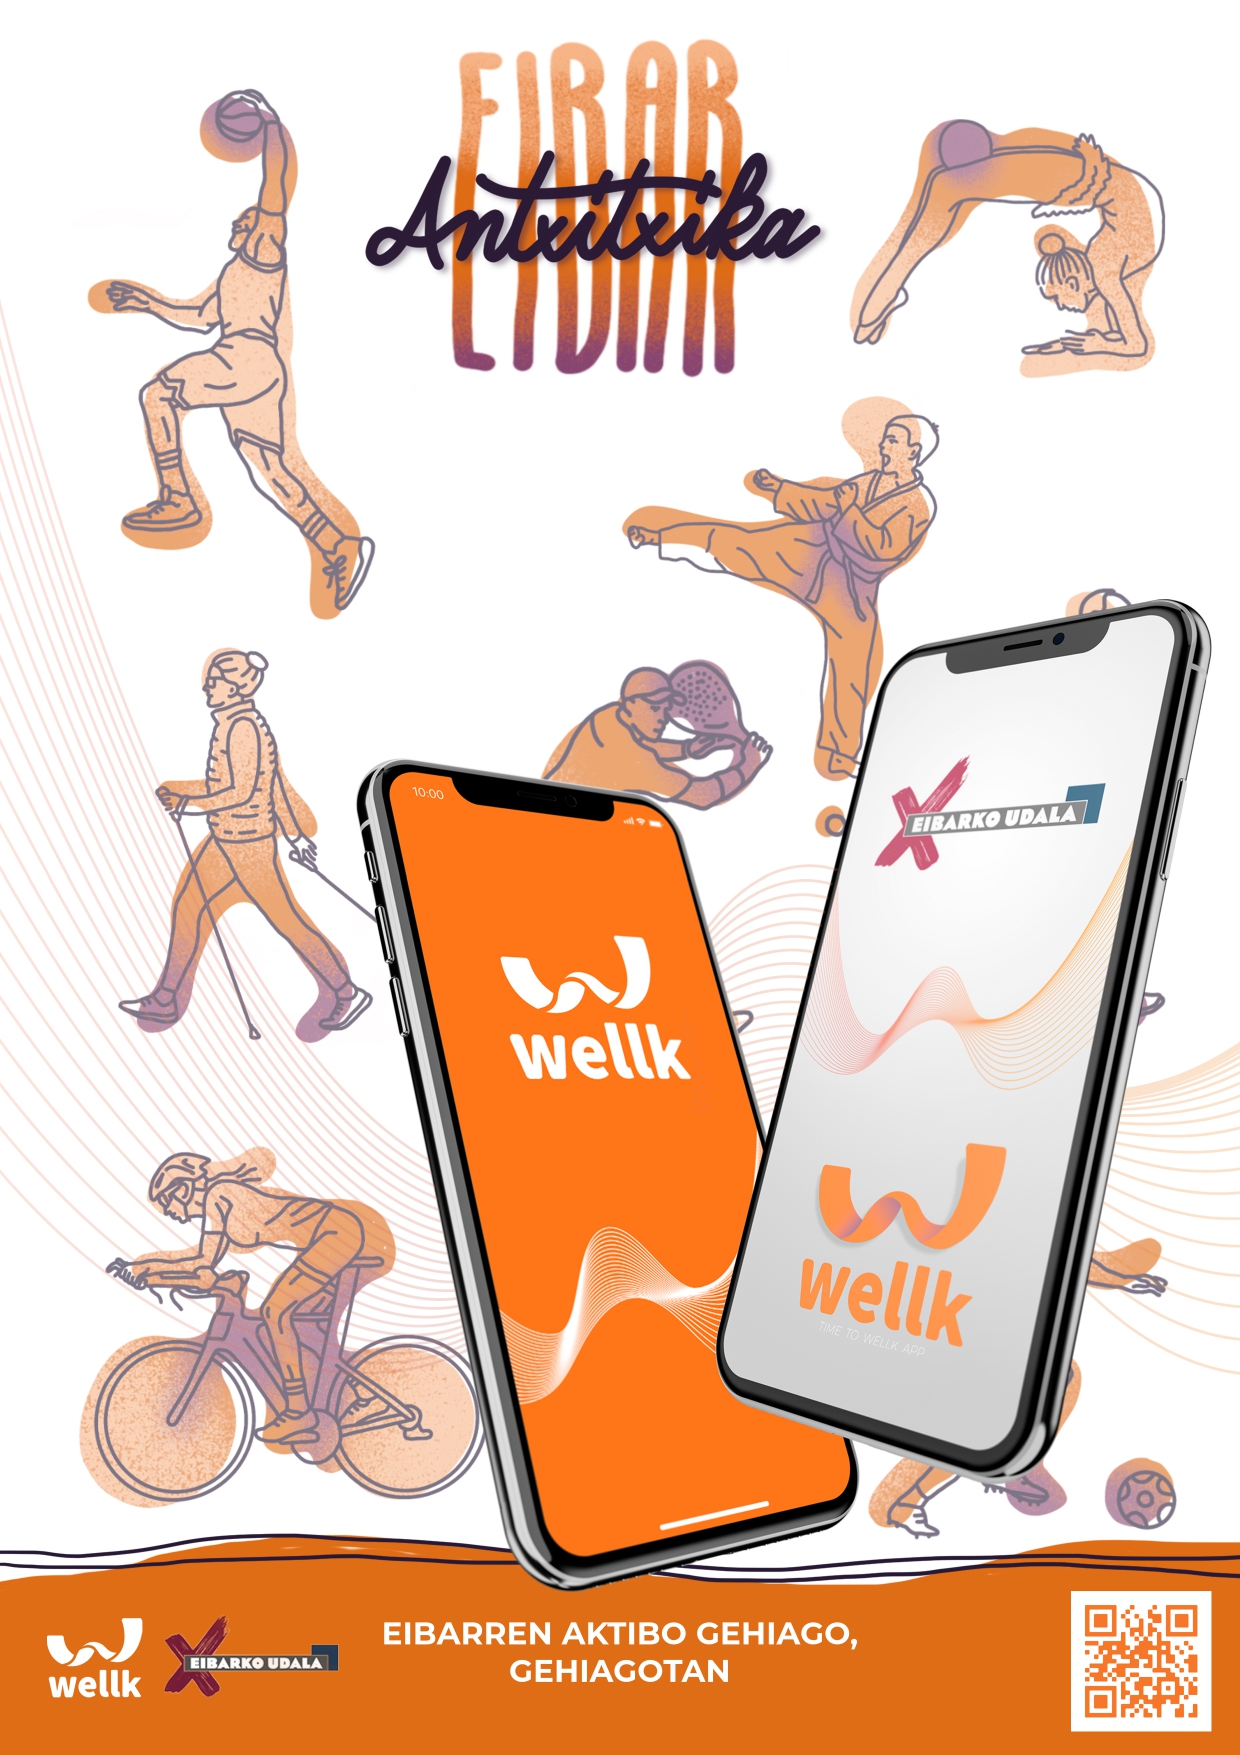 El Ayuntamiento lanza el proyecto 'Antxitxika Eibar' para el fomento de la actividad física entre los/as eibarreses/as mediante la app Wellk